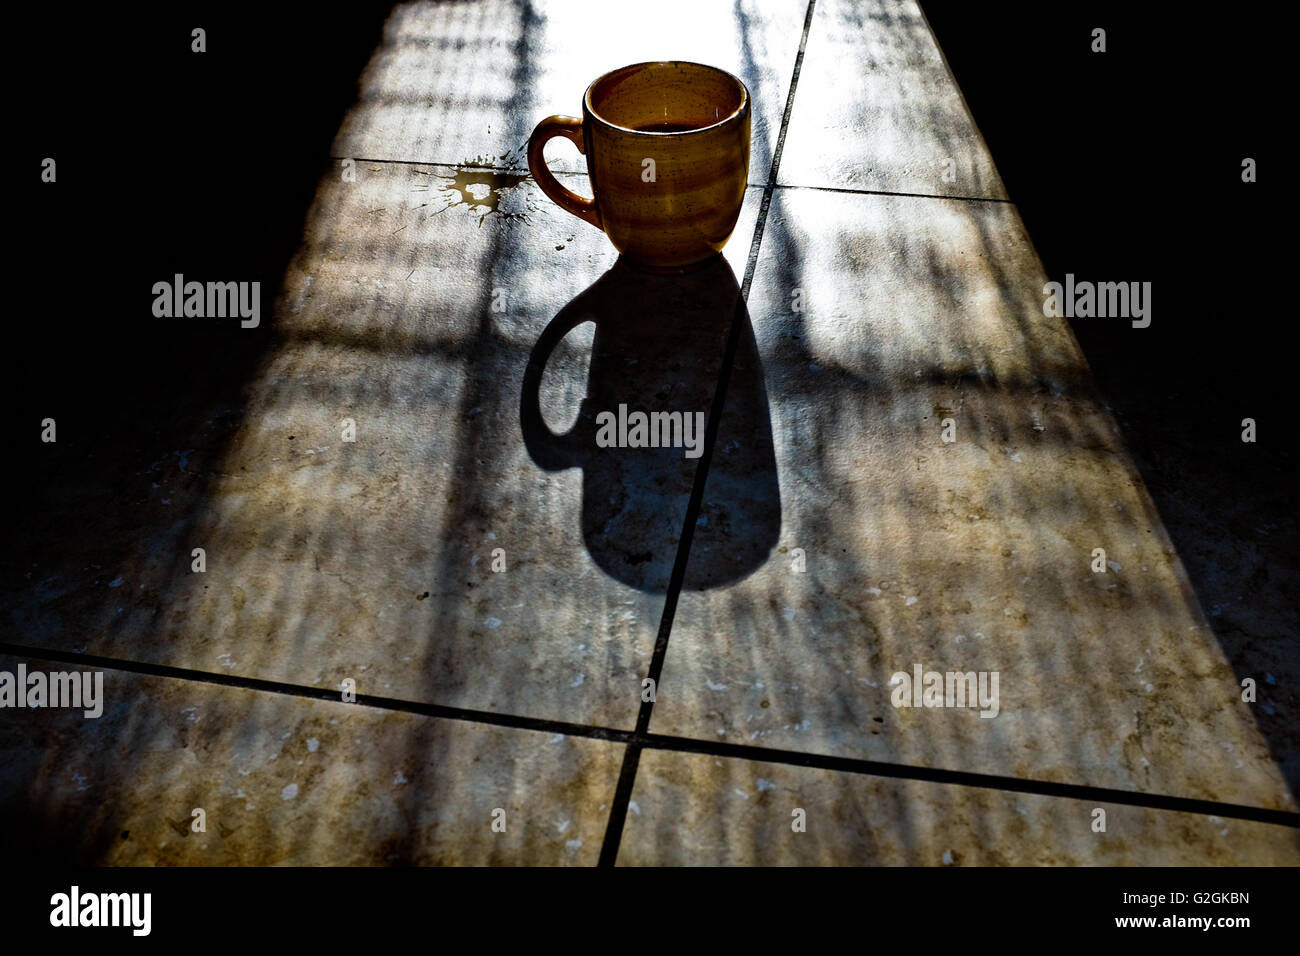 coffee-mug-with-shadow-on-tile-floor-G2G